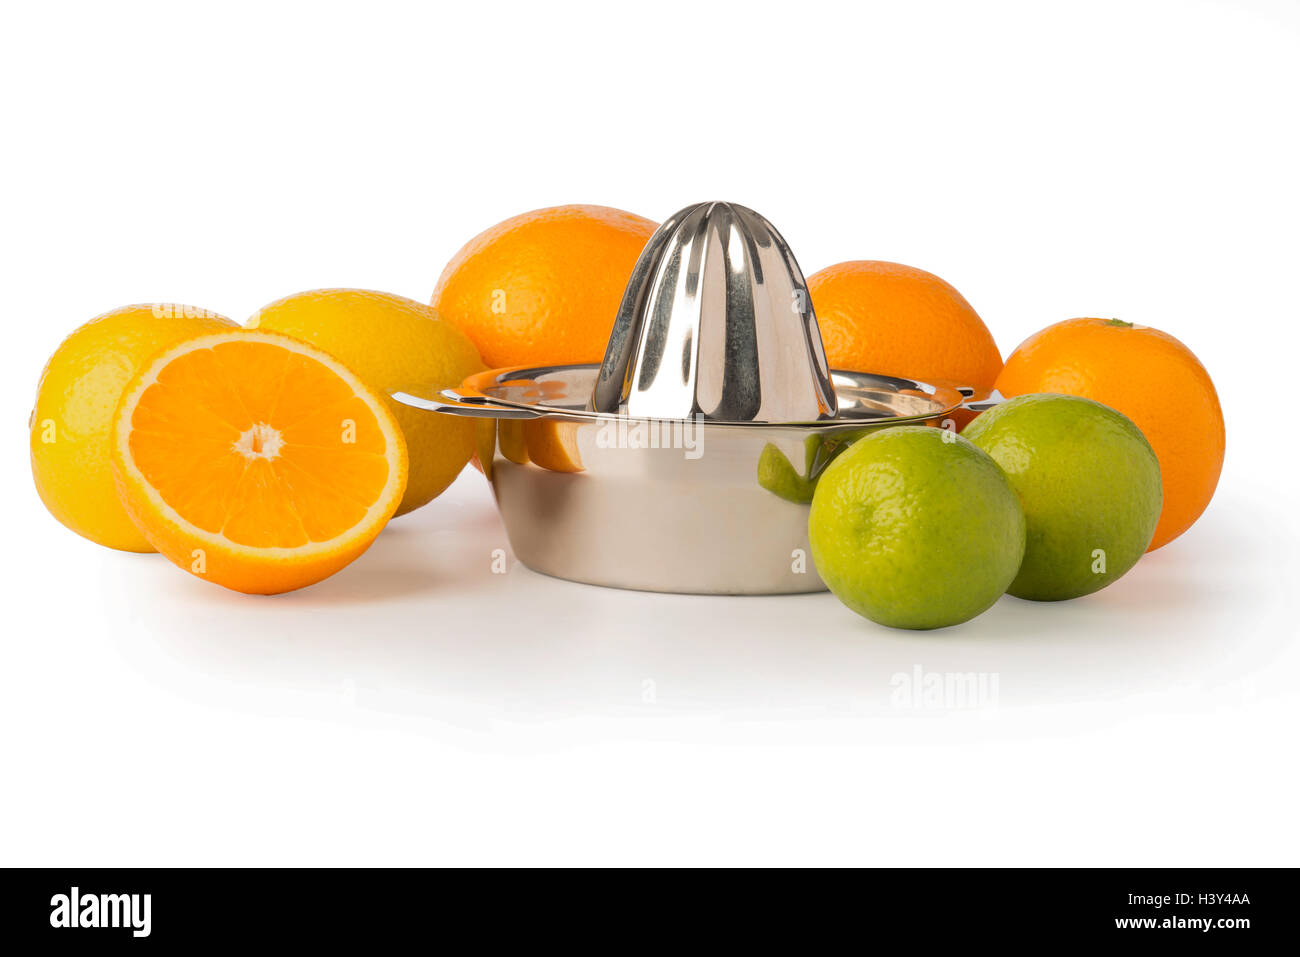 Ausschnitt aus einer Edelstahl orange oder Zitrone Hand Saftpresse umgeben von ganzen Zitronen, Orangen, Limetten und halben Orange. Stockfoto